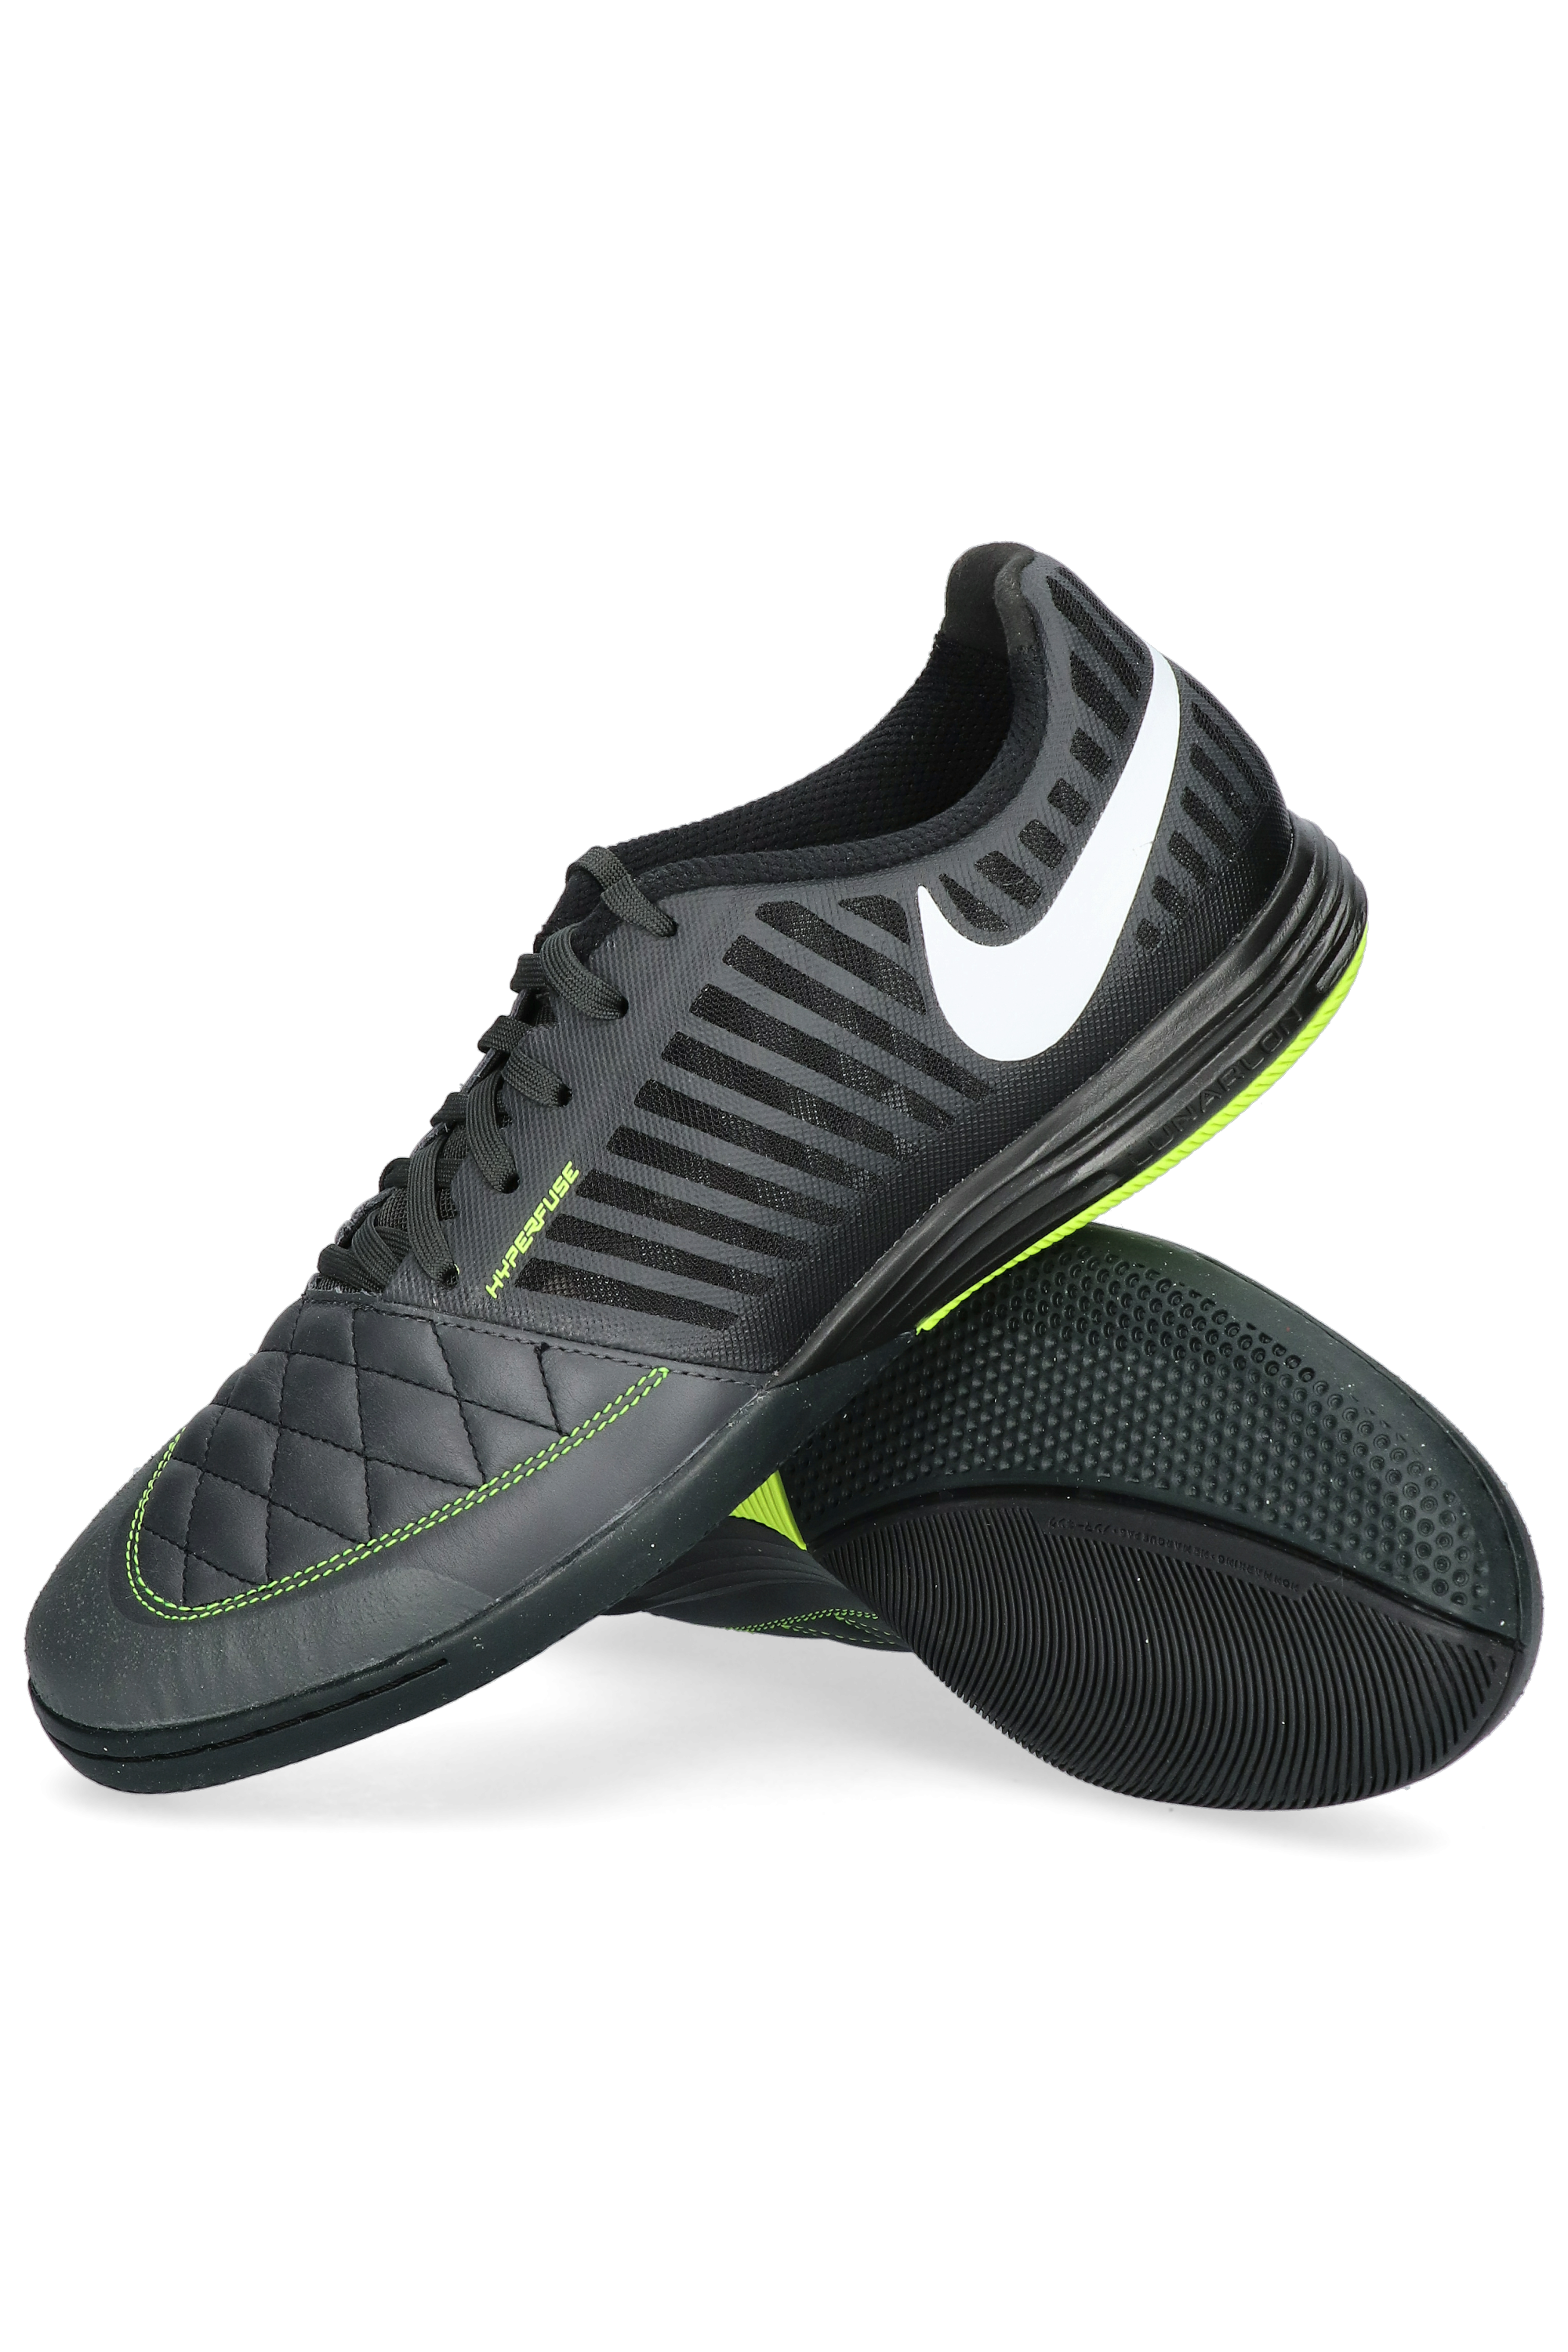 Nike Lunargato II IC | R-GOL.com 